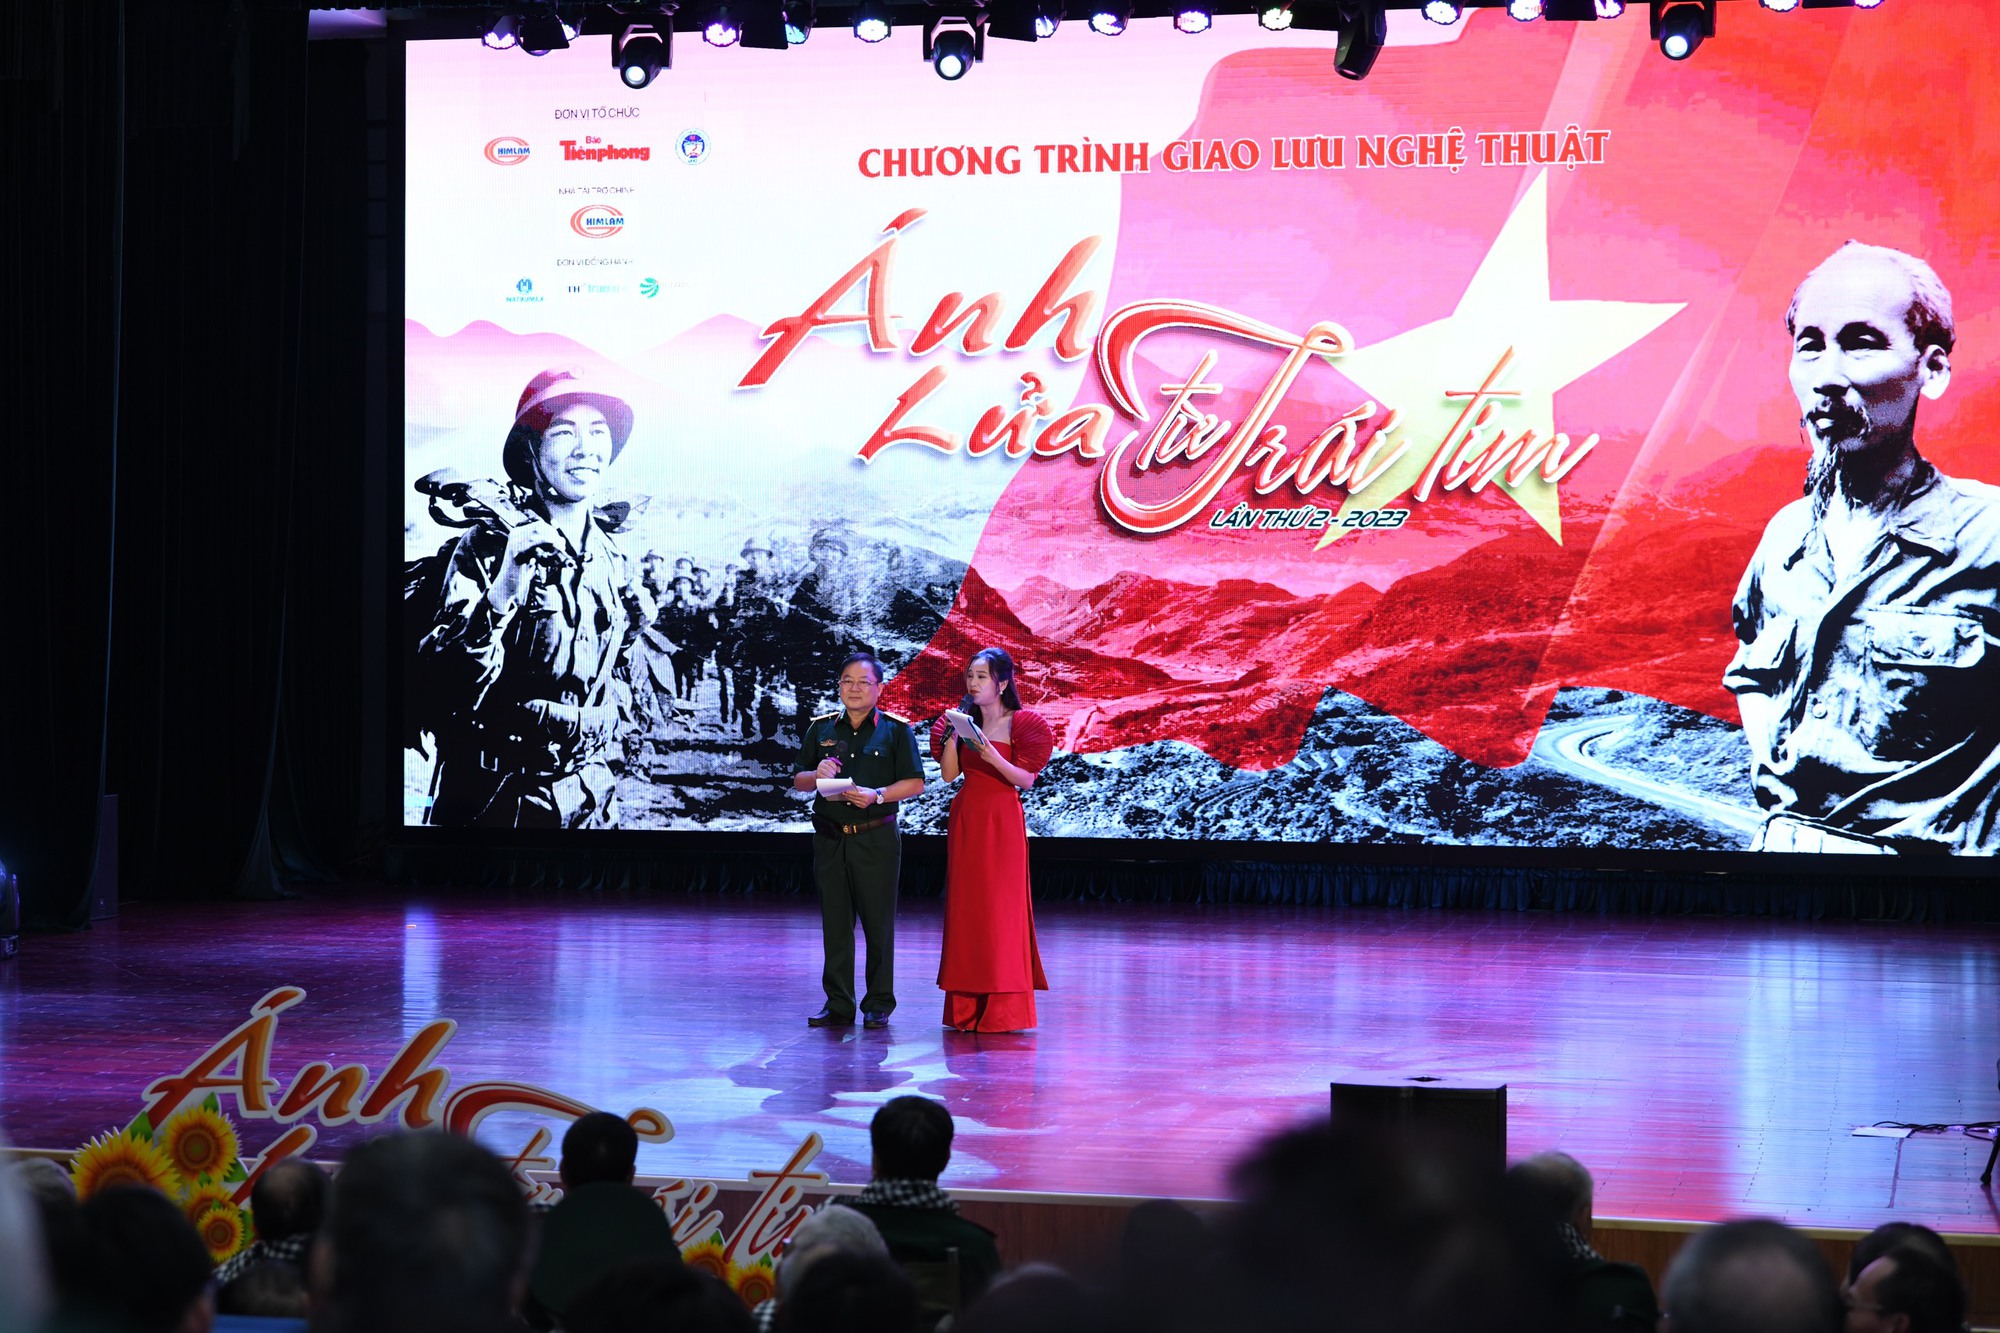 Hơn 600 sinh viên Hà Nội bật flash điện thoại trong đêm, vừa khóc vừa hát theo ca khúc nổi tiếng  - Ảnh 1.